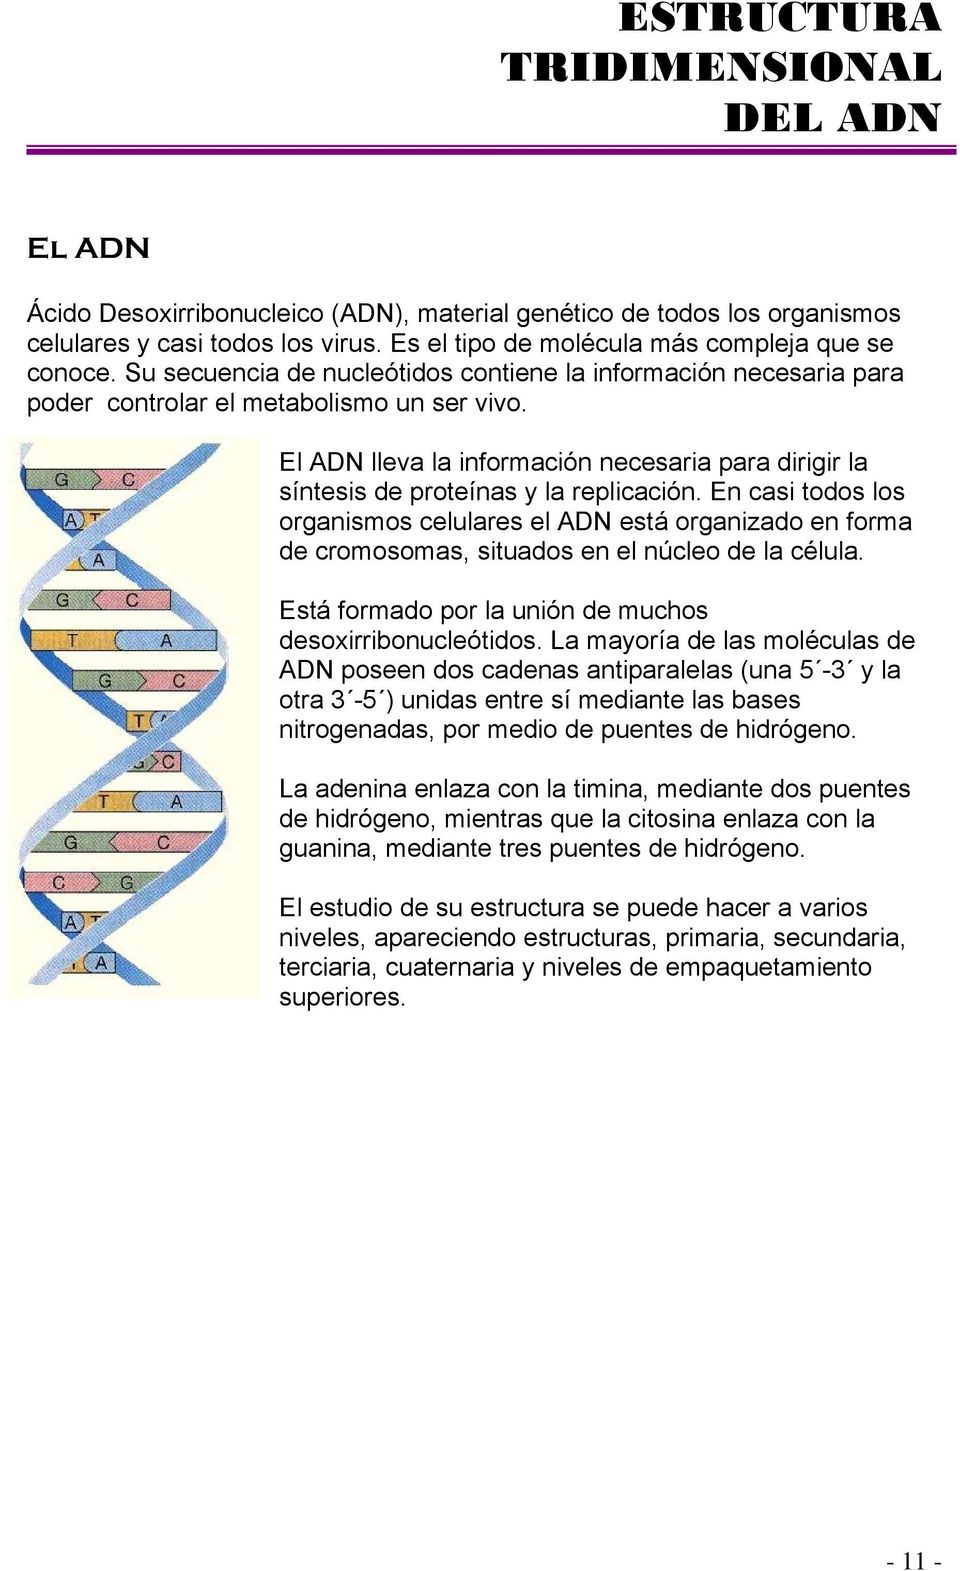 El ADN lleva la información necesaria para dirigir la síntesis de proteínas y la replicación.